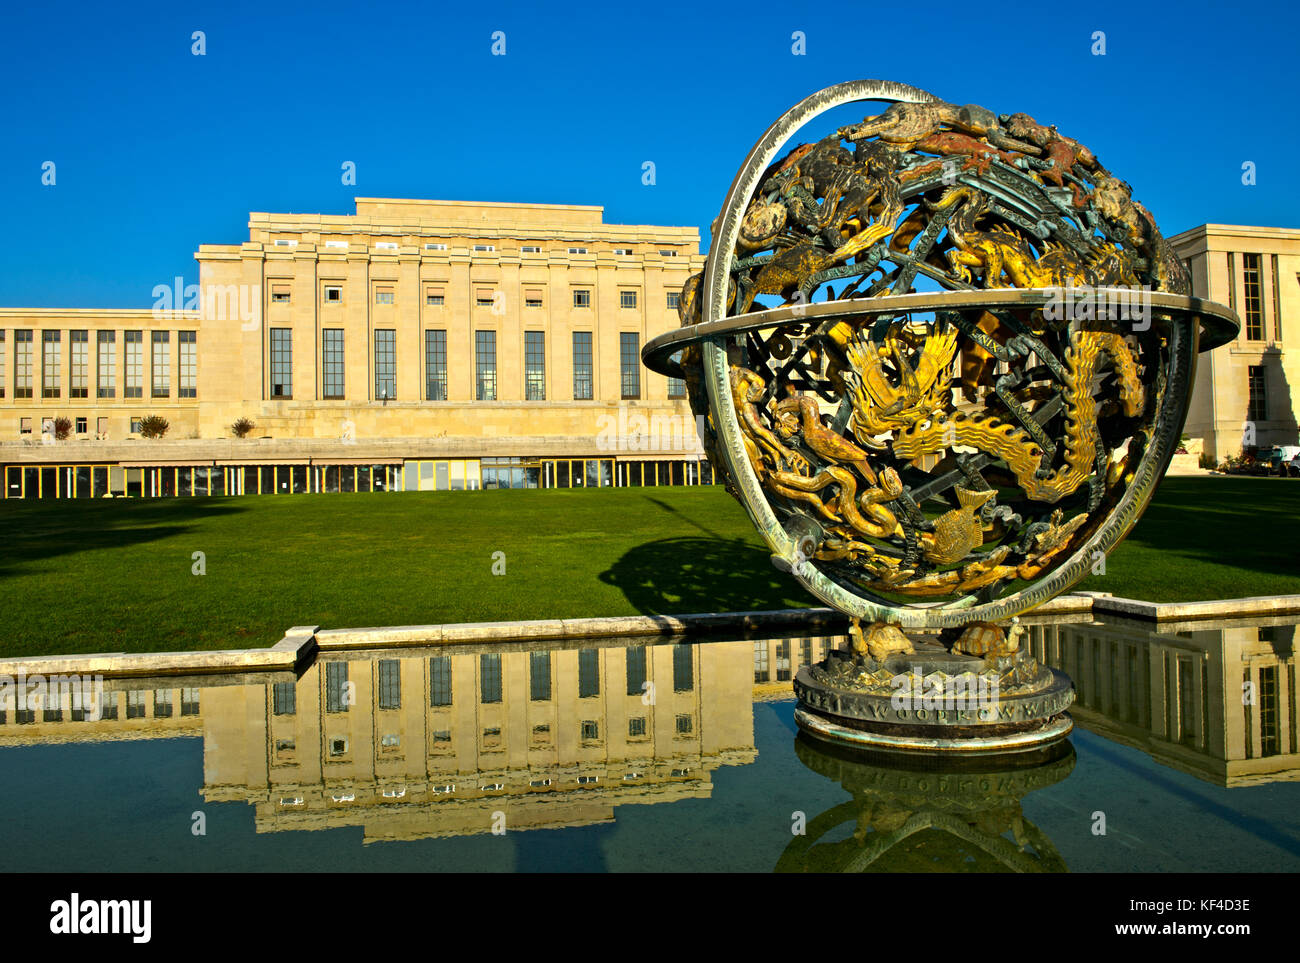 Monumento conmemorativo de la esfera celestial Woodrow Wilson, Palacio de las Naciones, Naciones Unidas, Ginebra, Suiza Foto de stock